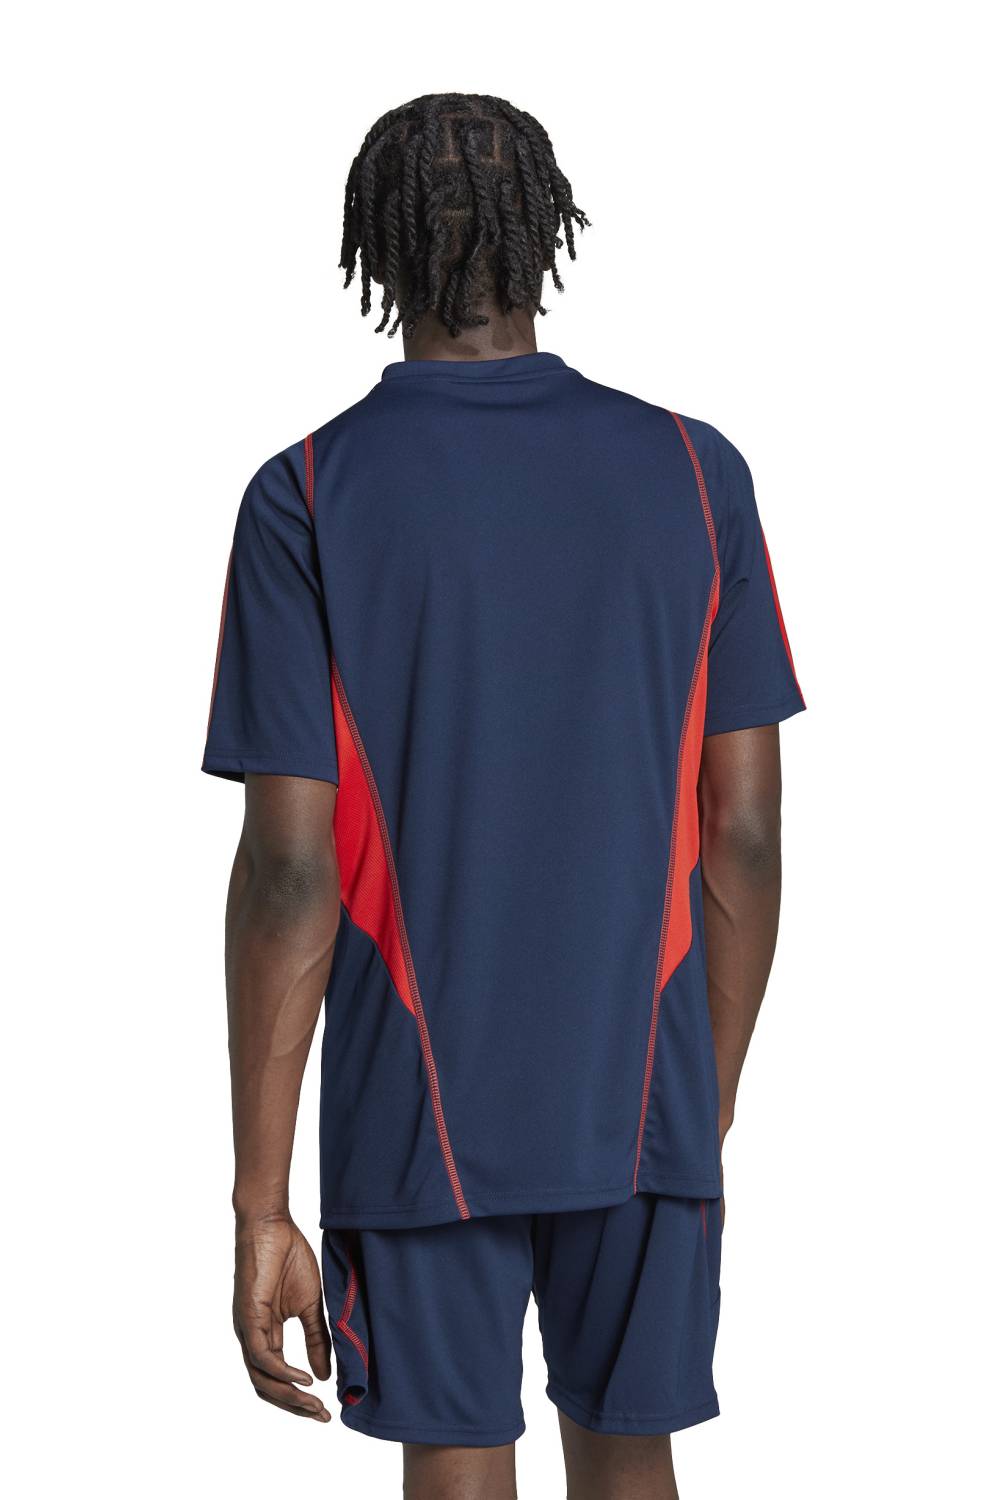 ADIDAS - Camiseta De Fútbol Selección Chilena Hombre Adidas